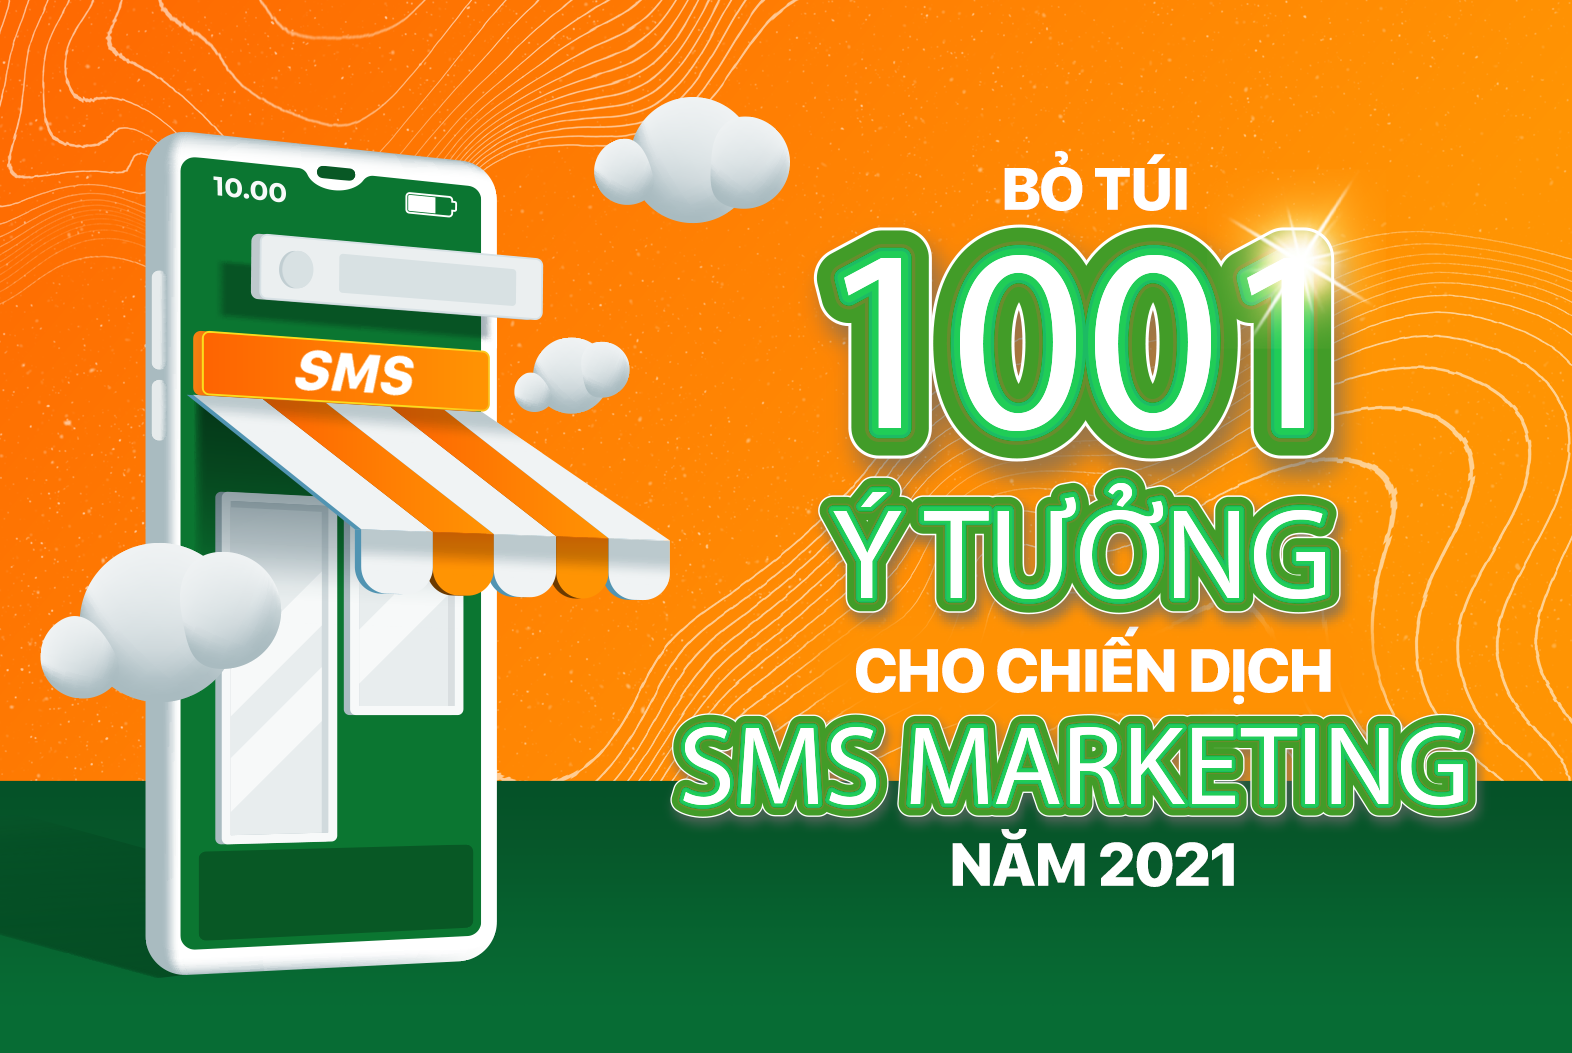 Bỏ túi 1001 ý tưởng cho chiến dịch SMS Marketing năm 2021